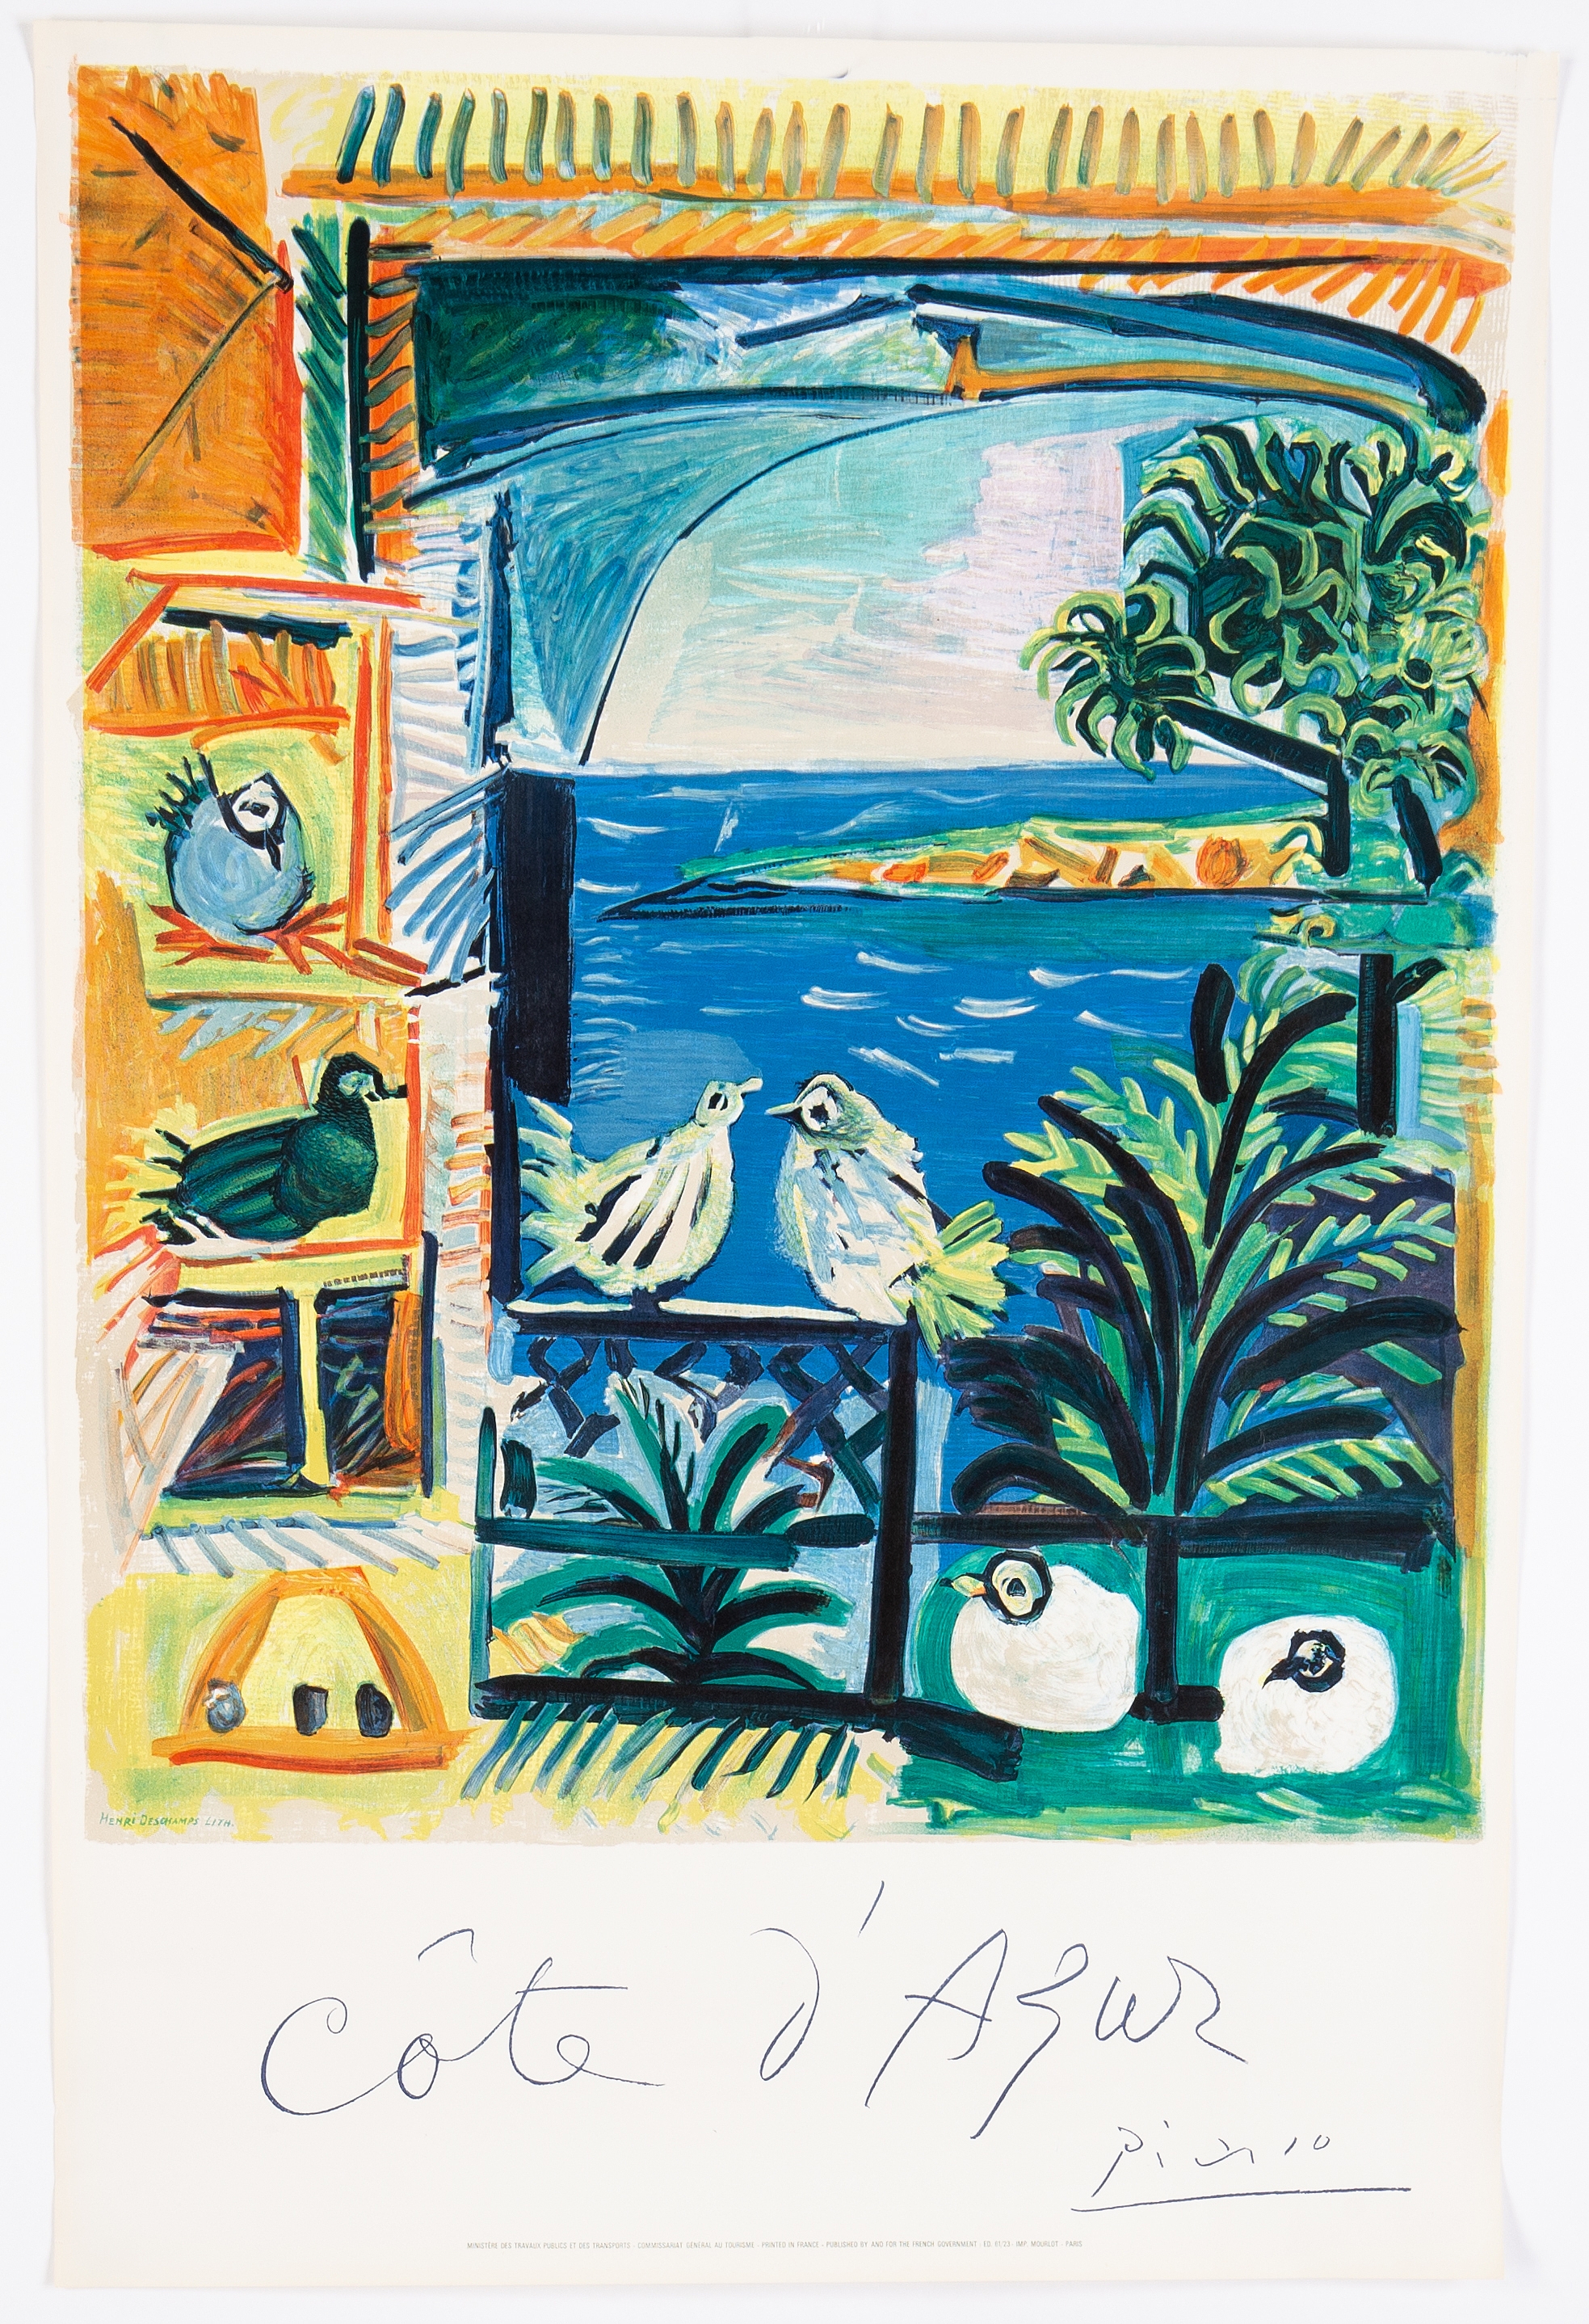 "Côte d'Azur" by Pablo Picasso, 1962